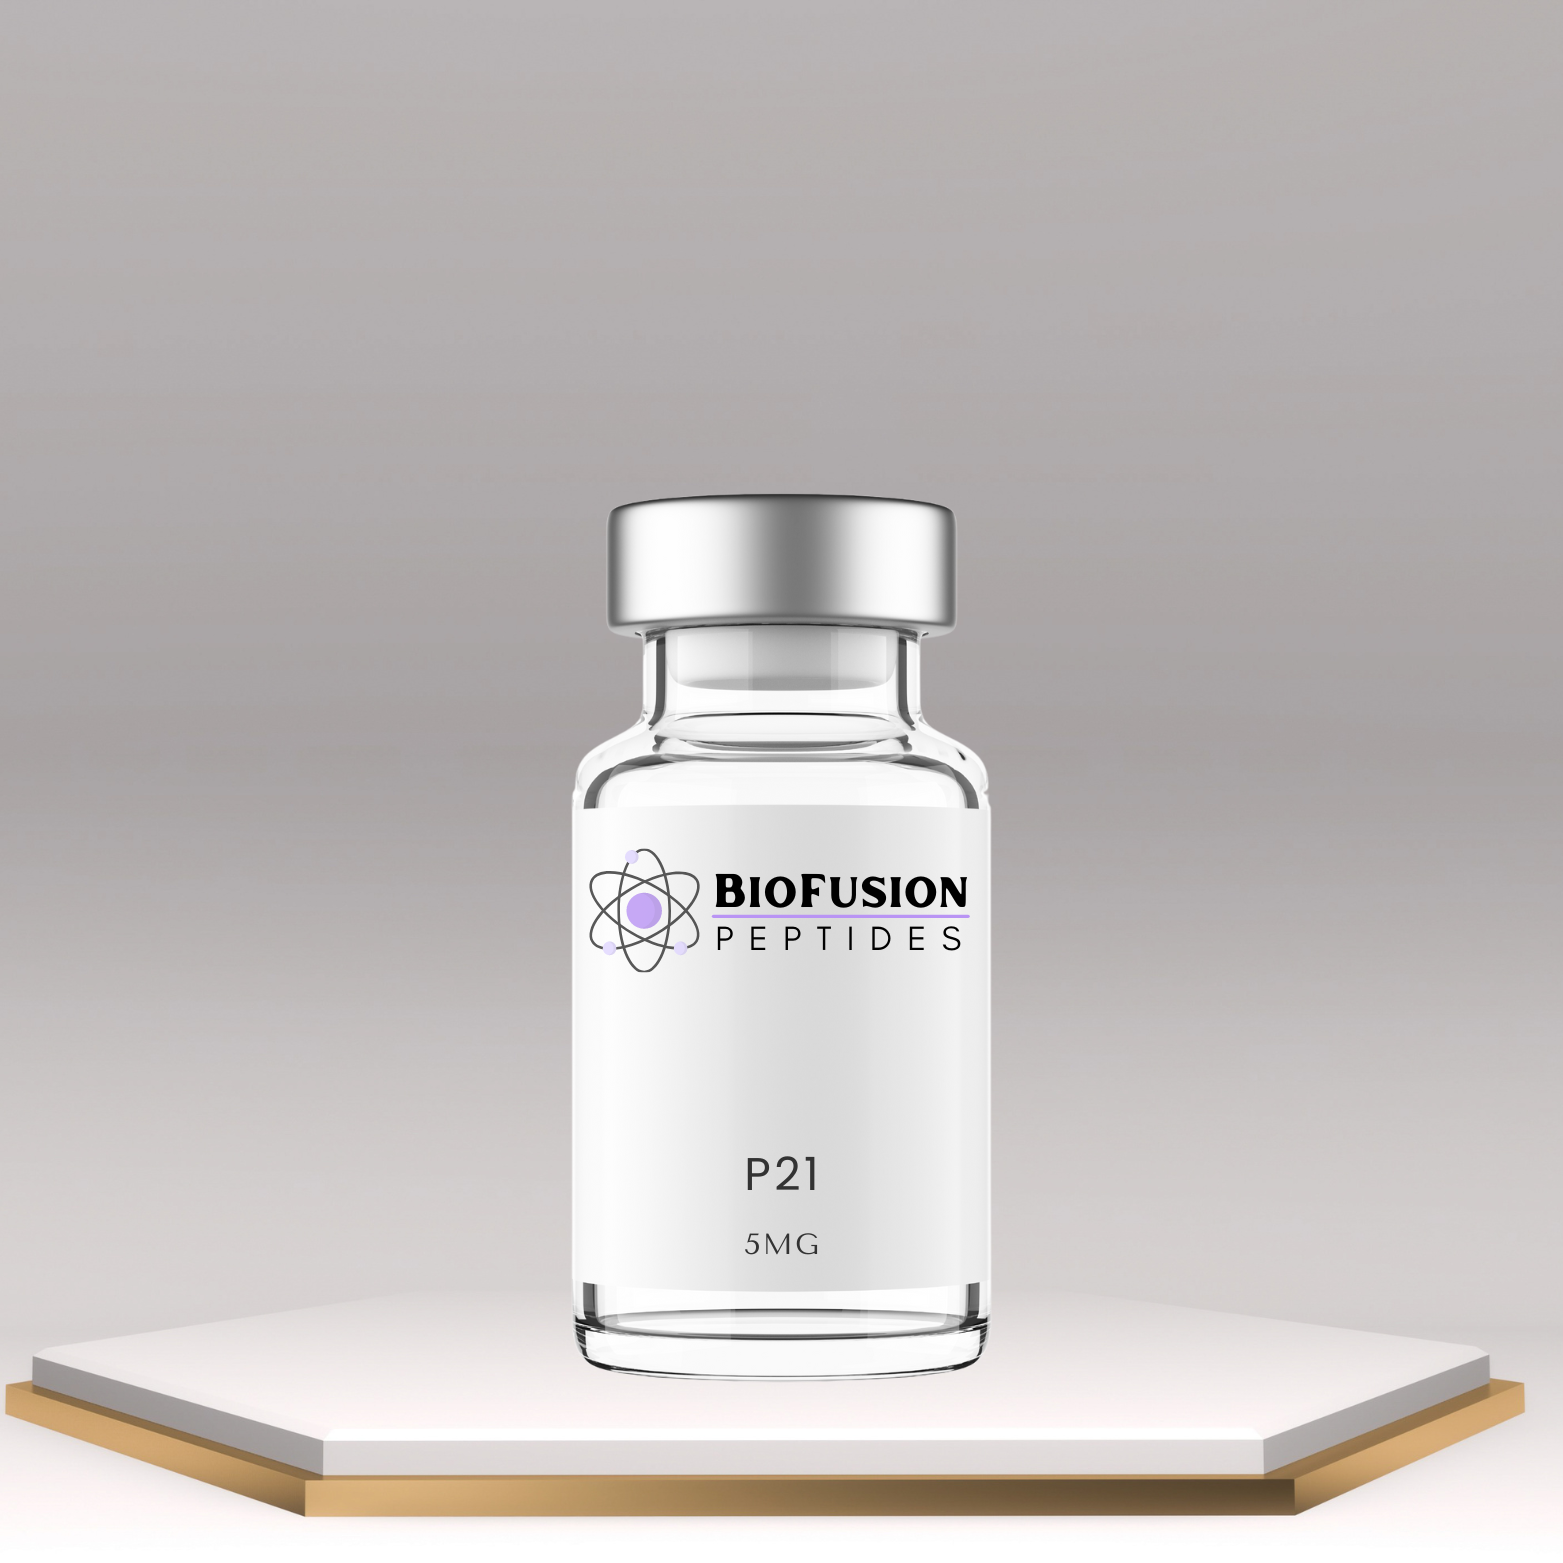 BioFusion Peptides P21 5mg vial